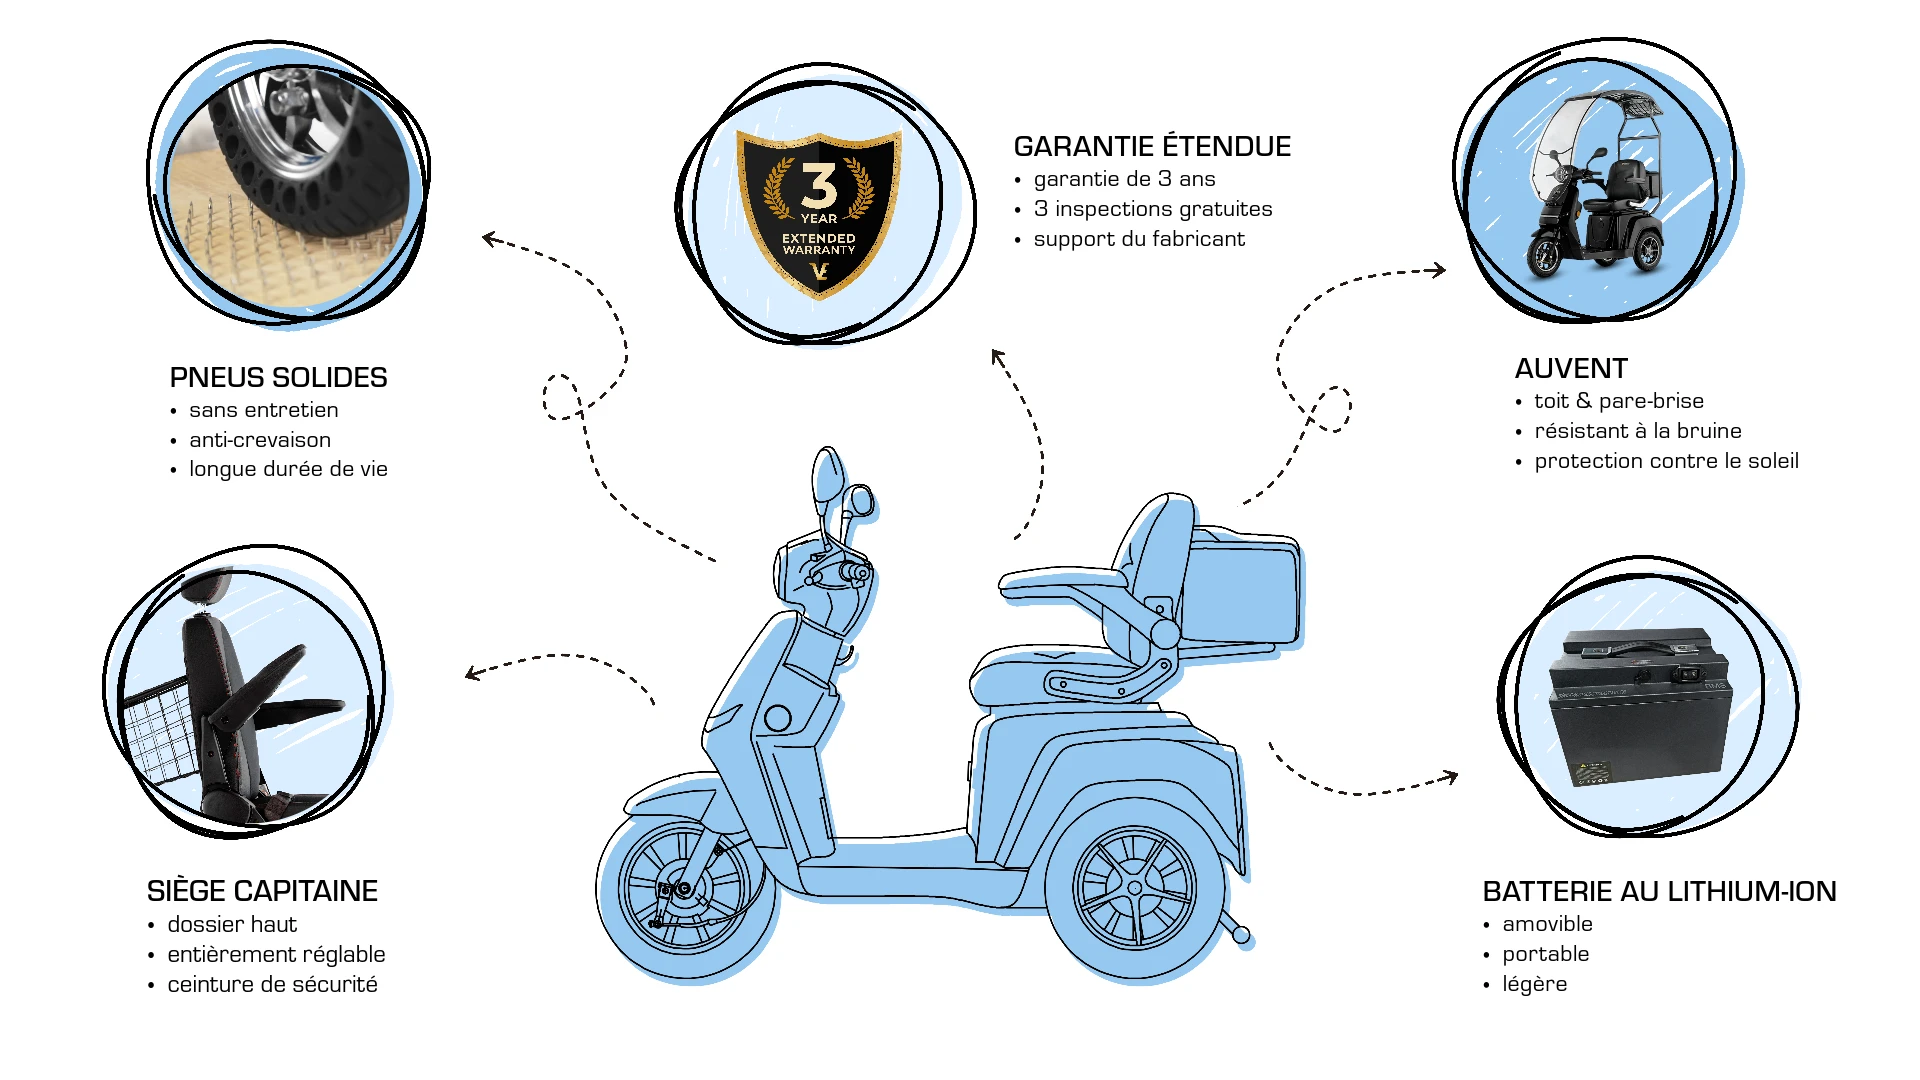 Veleco TURRIS extras, améliorations, pneus pleins pour scooter de mobilité, garantie prolongée, batterie lithium-ion, toit, siège capitaine